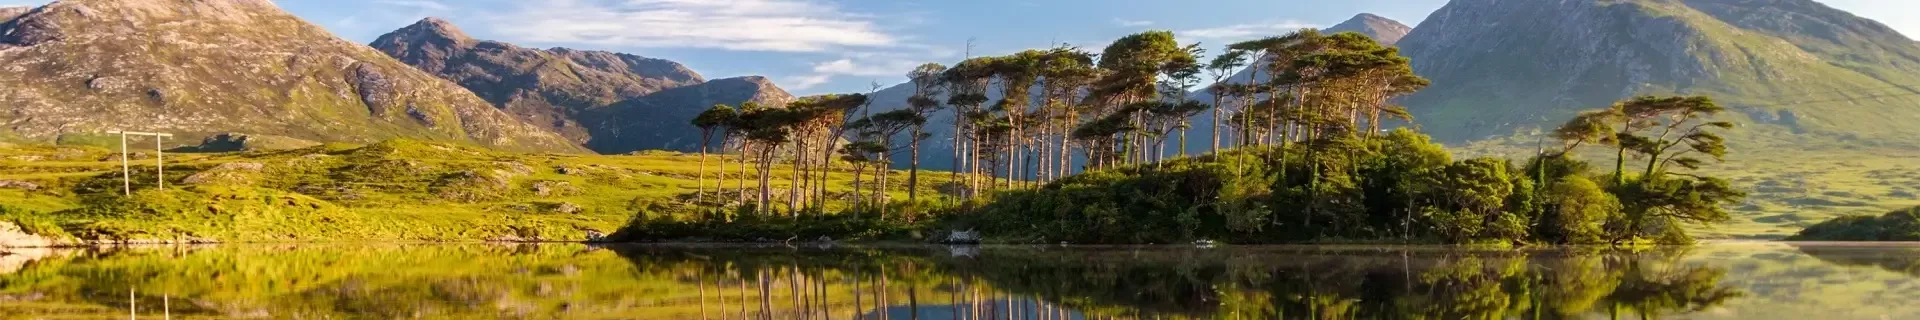 Ierland Connemara